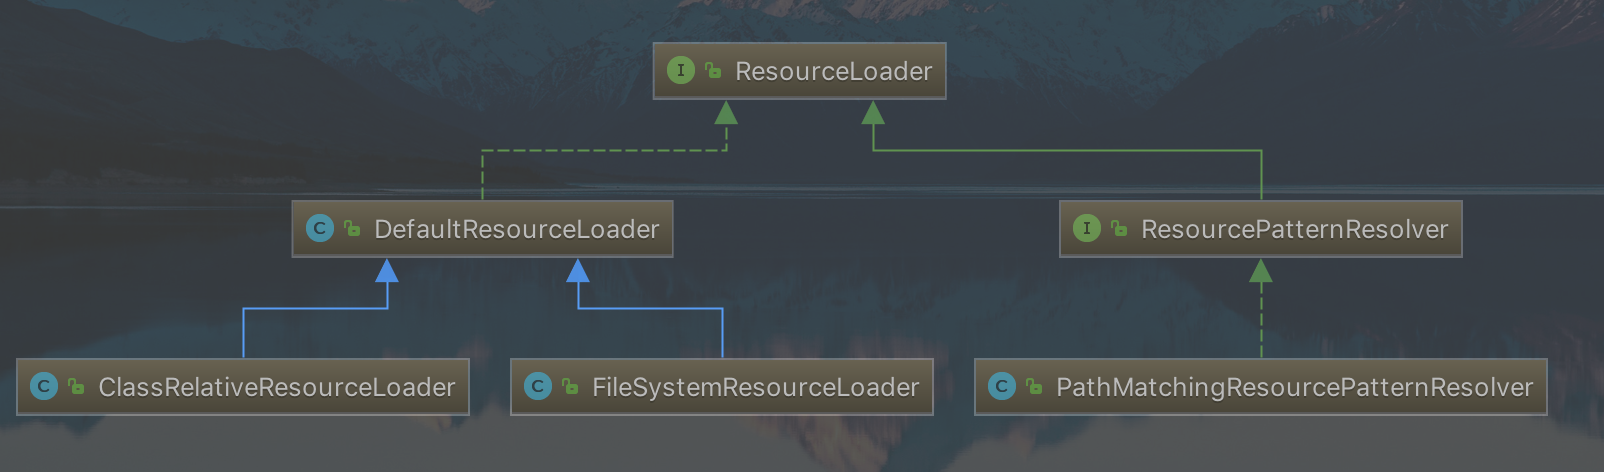 ResourceLoader 类图